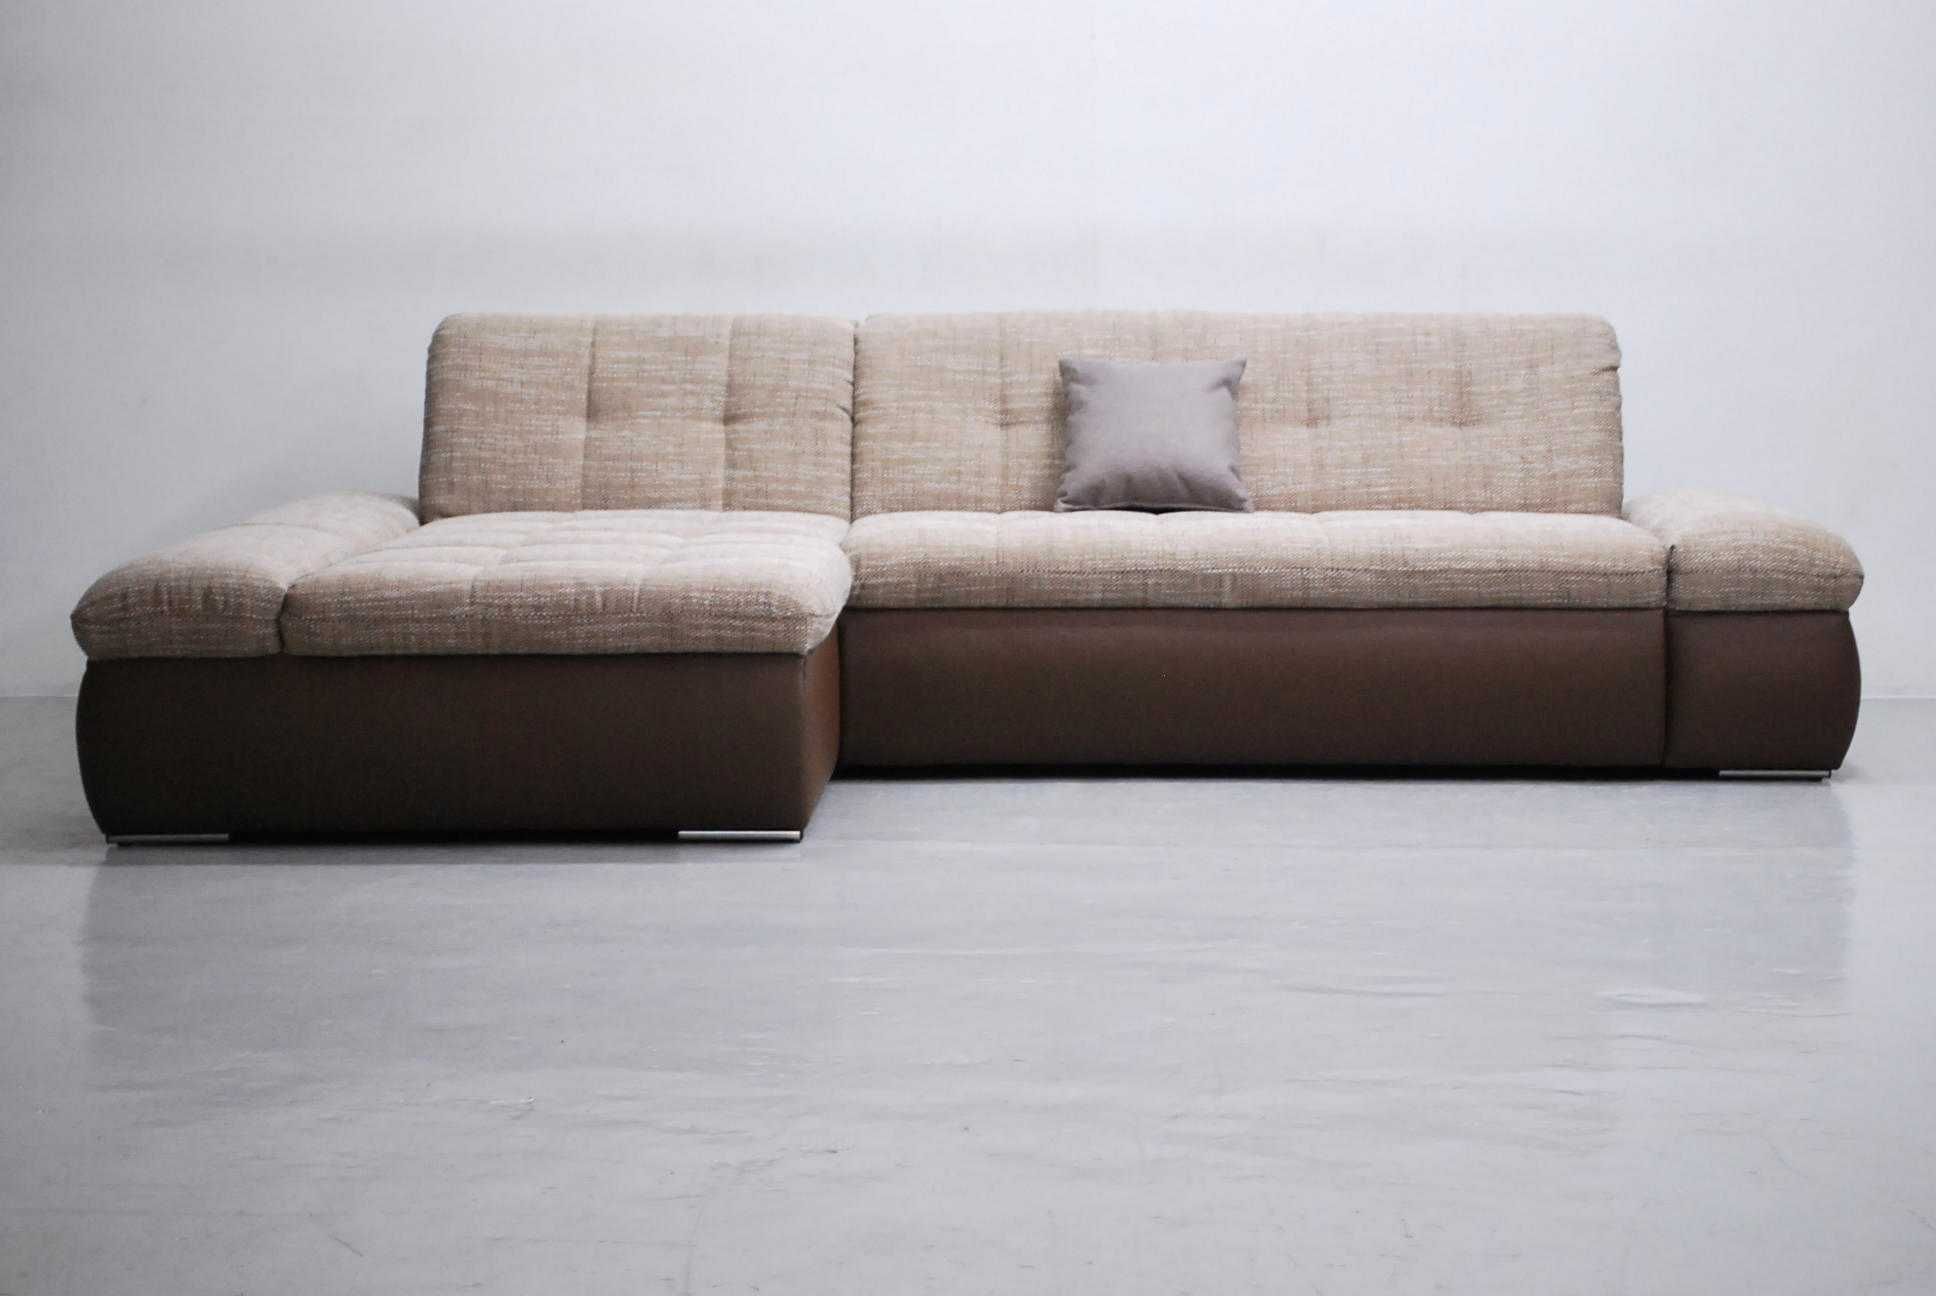 RXD narożnik funkcja spania, rogówka brązowa tkanina + eco skóra sofa